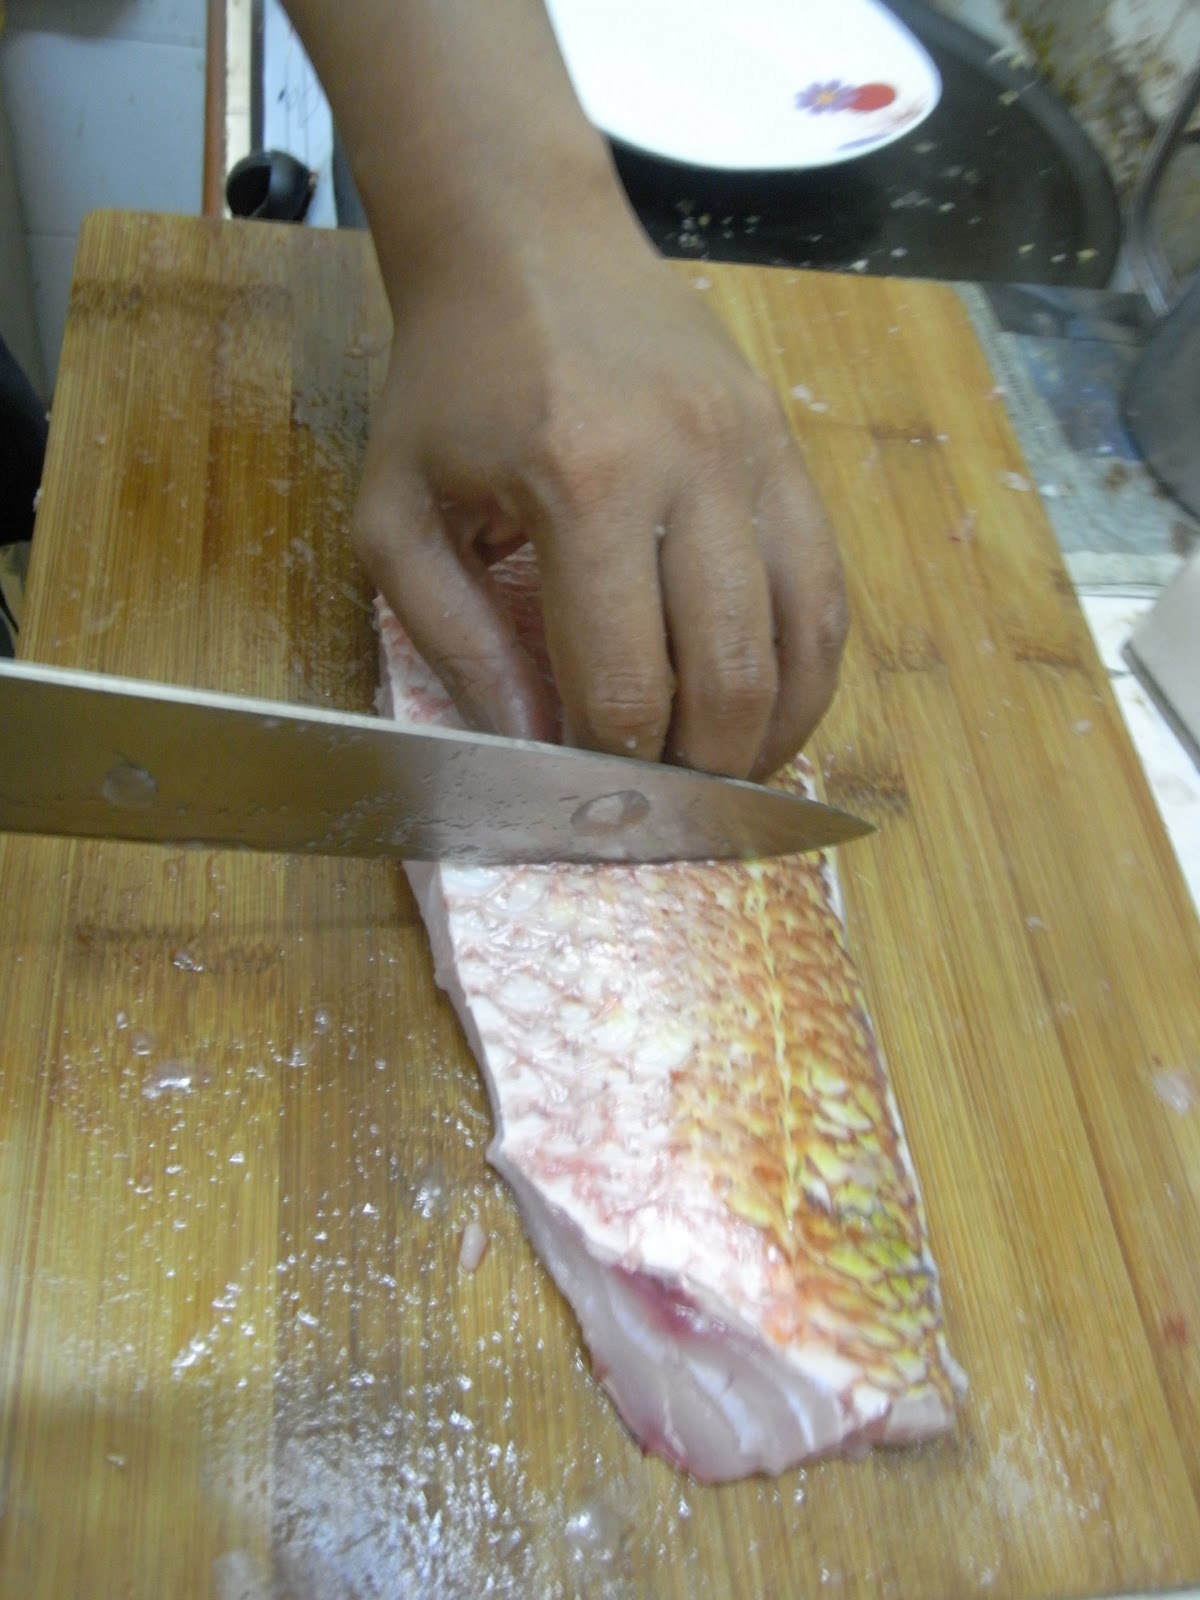 MALAYSIAN FISH HUNTER: Resepi Selepas Memancing 1 - Ikan 